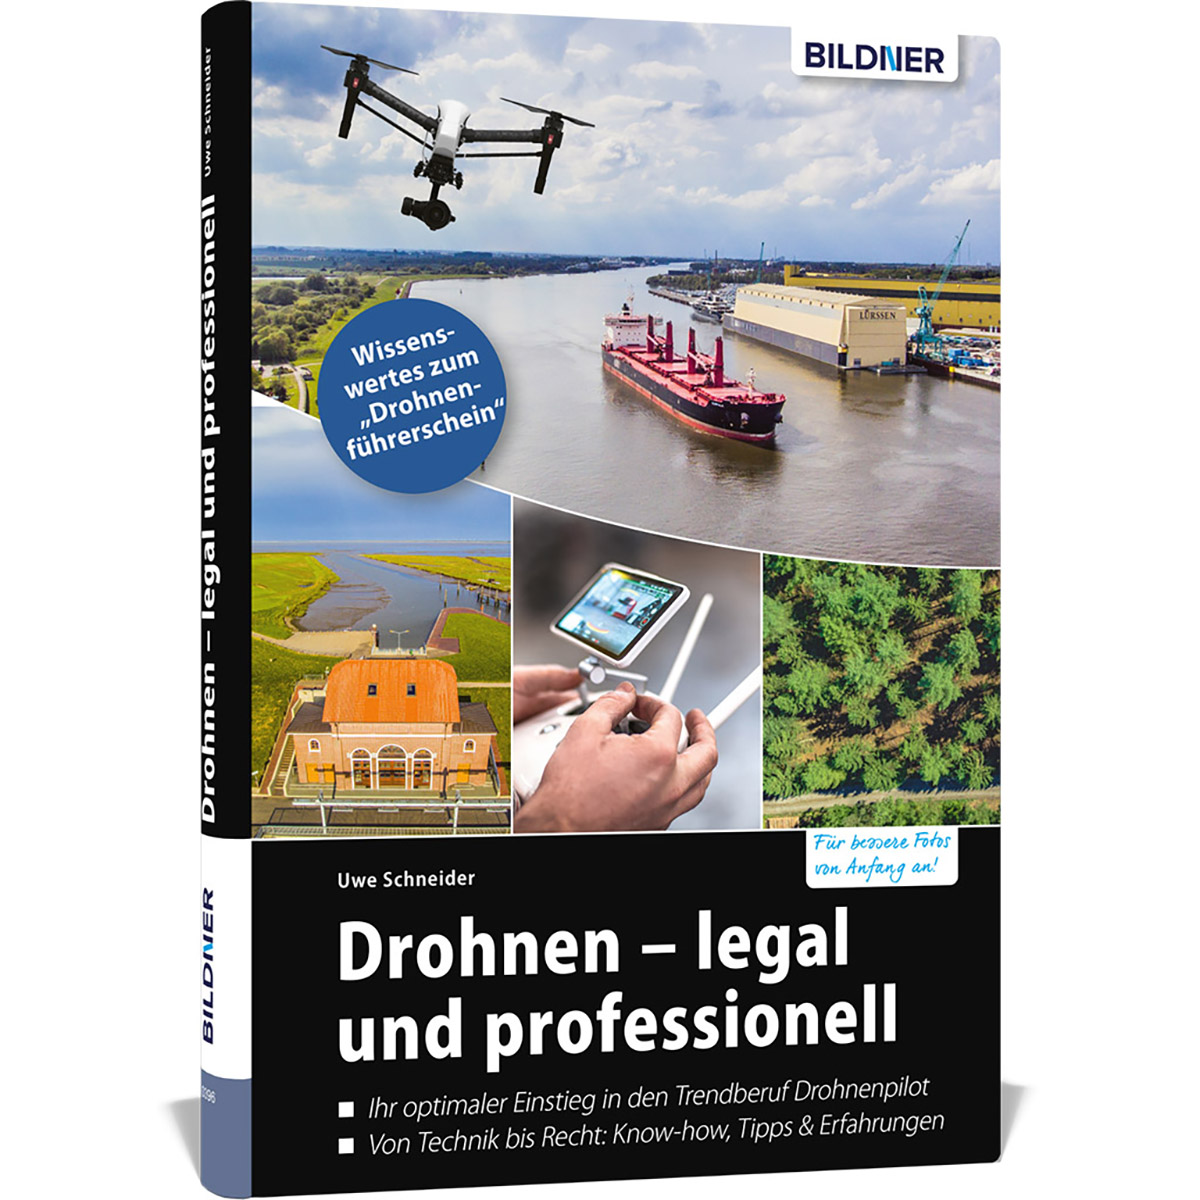 - und Drohnen professionell legal